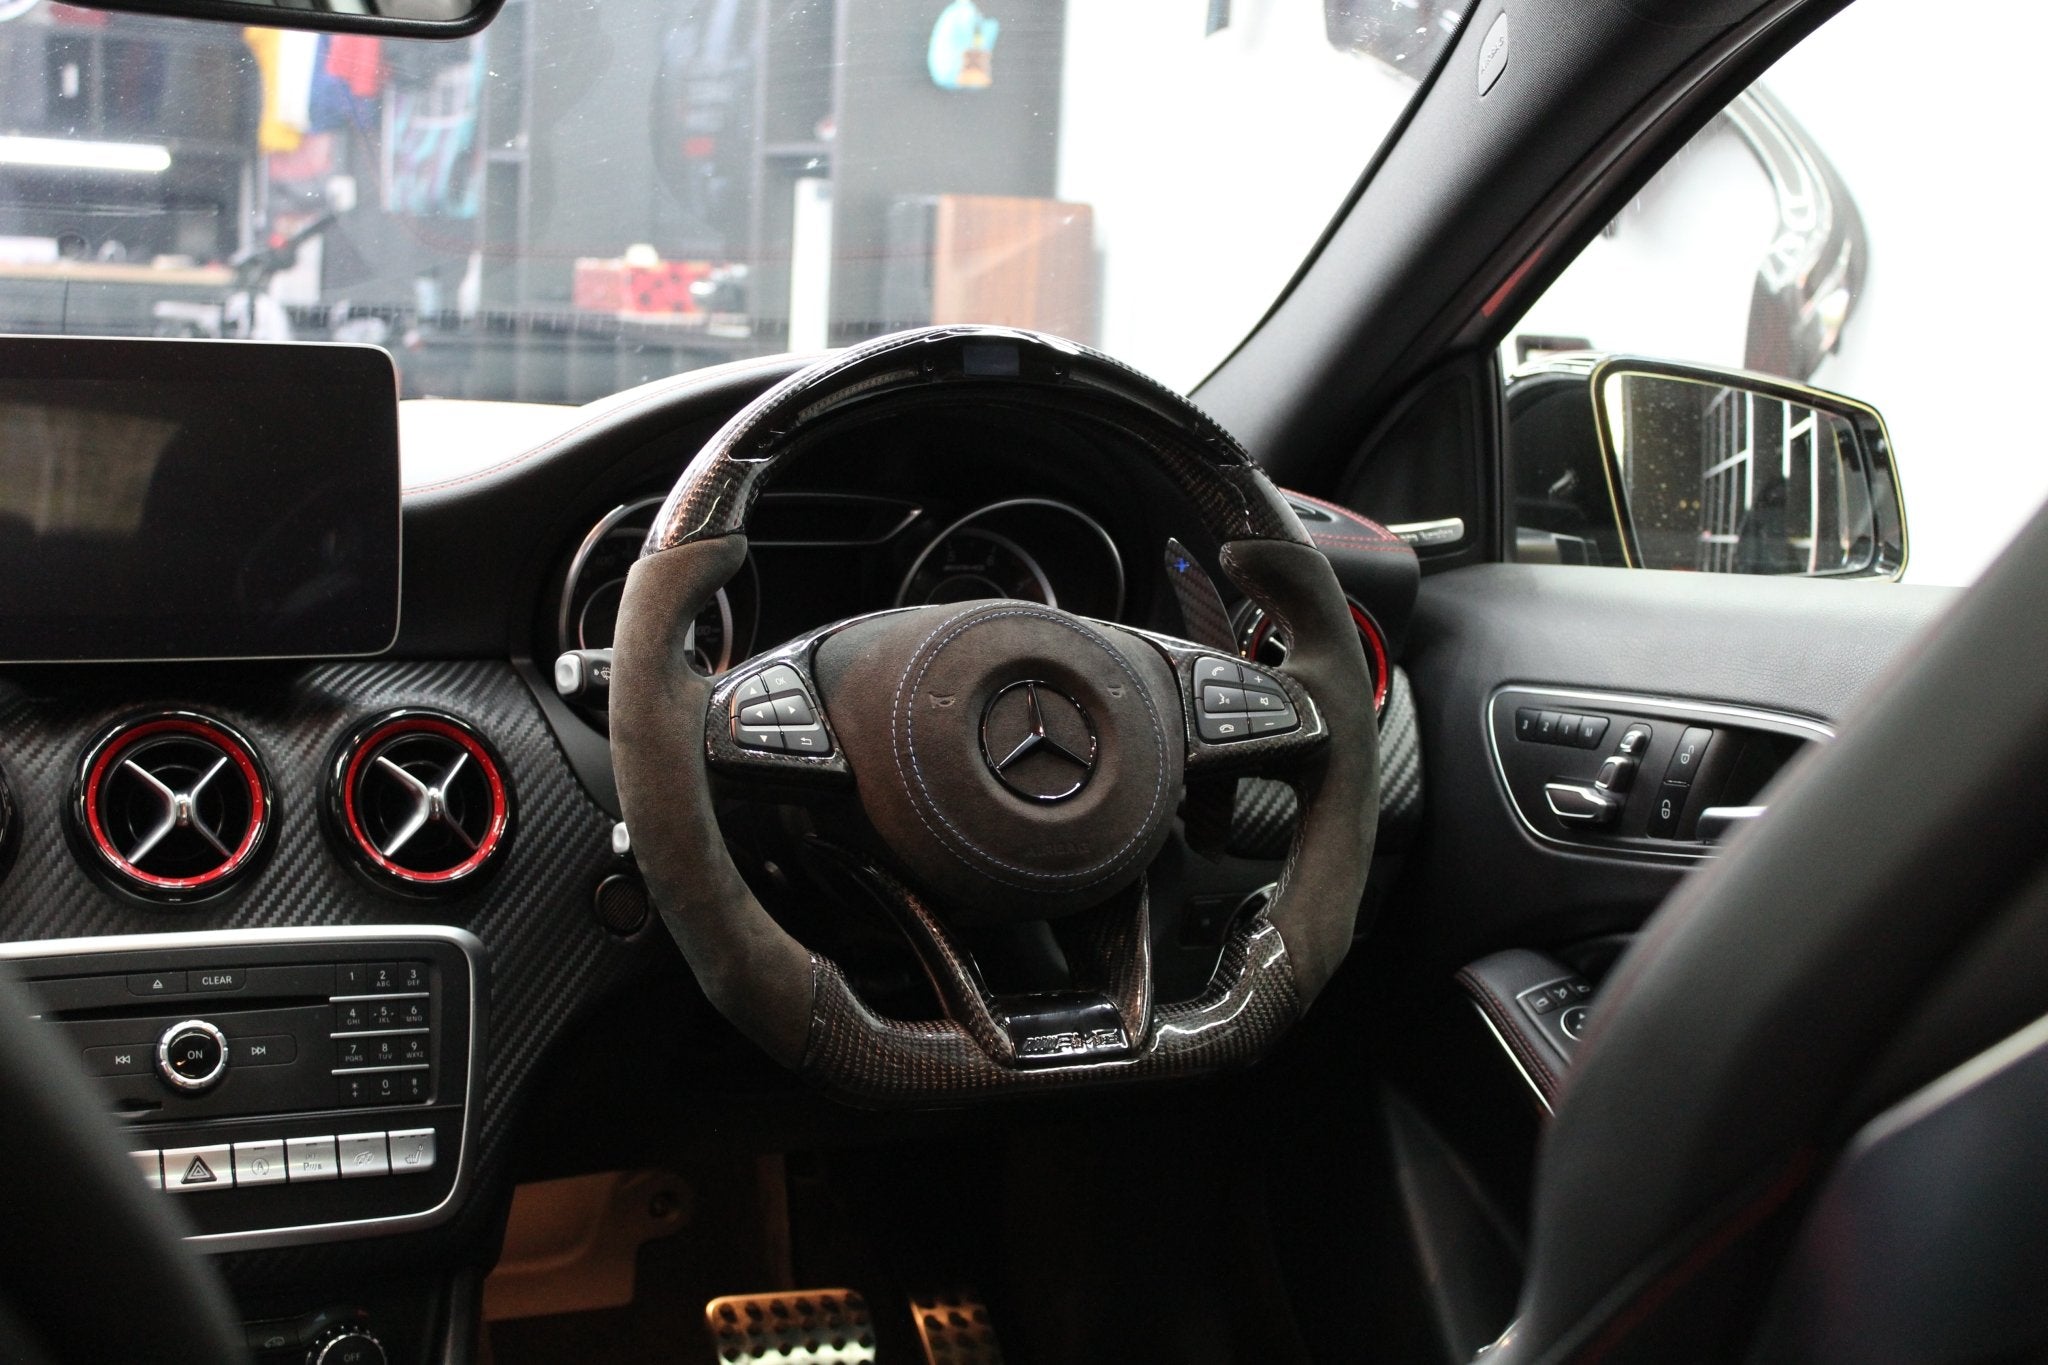 Mercedes Custom Airbag Covers - Berg Auto Design